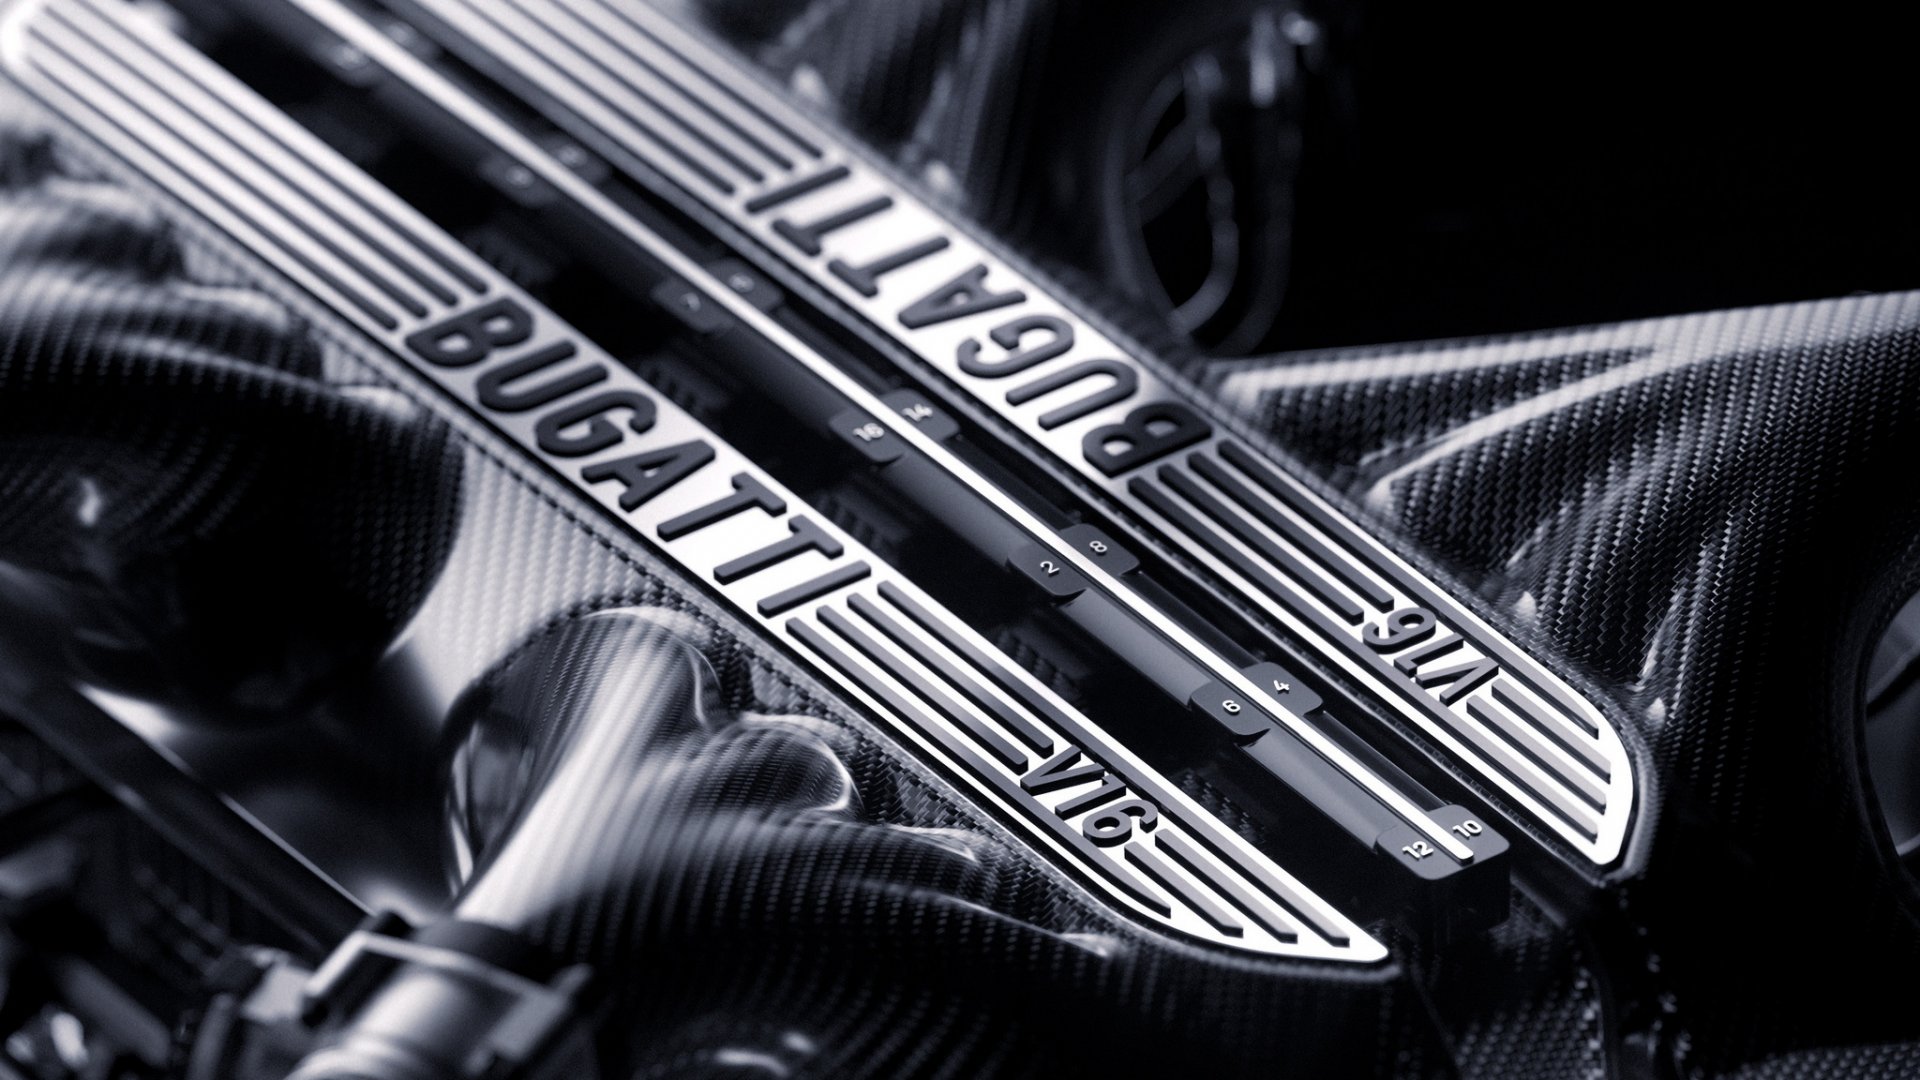 Bugatti คอนเฟิร์ม! เครื่องยนต์ใหม่ V16 แทนที่ตำนาน W16 เจอกันรุ่นใหม่ มิ.ย. นี้